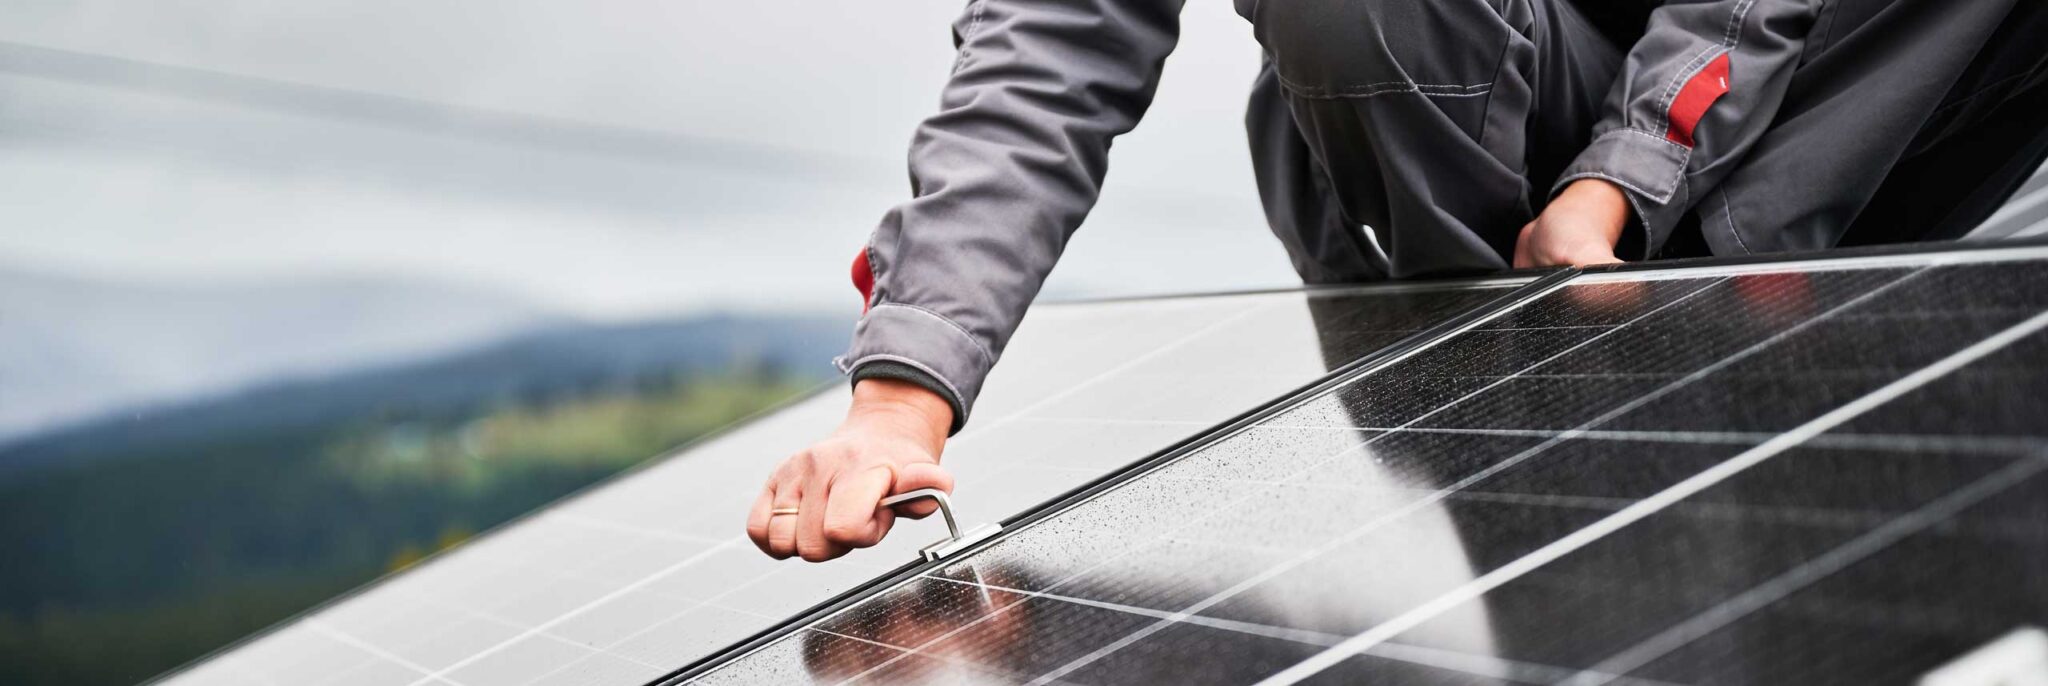 Installation einer Photovoltaikanlage auf einem Dach